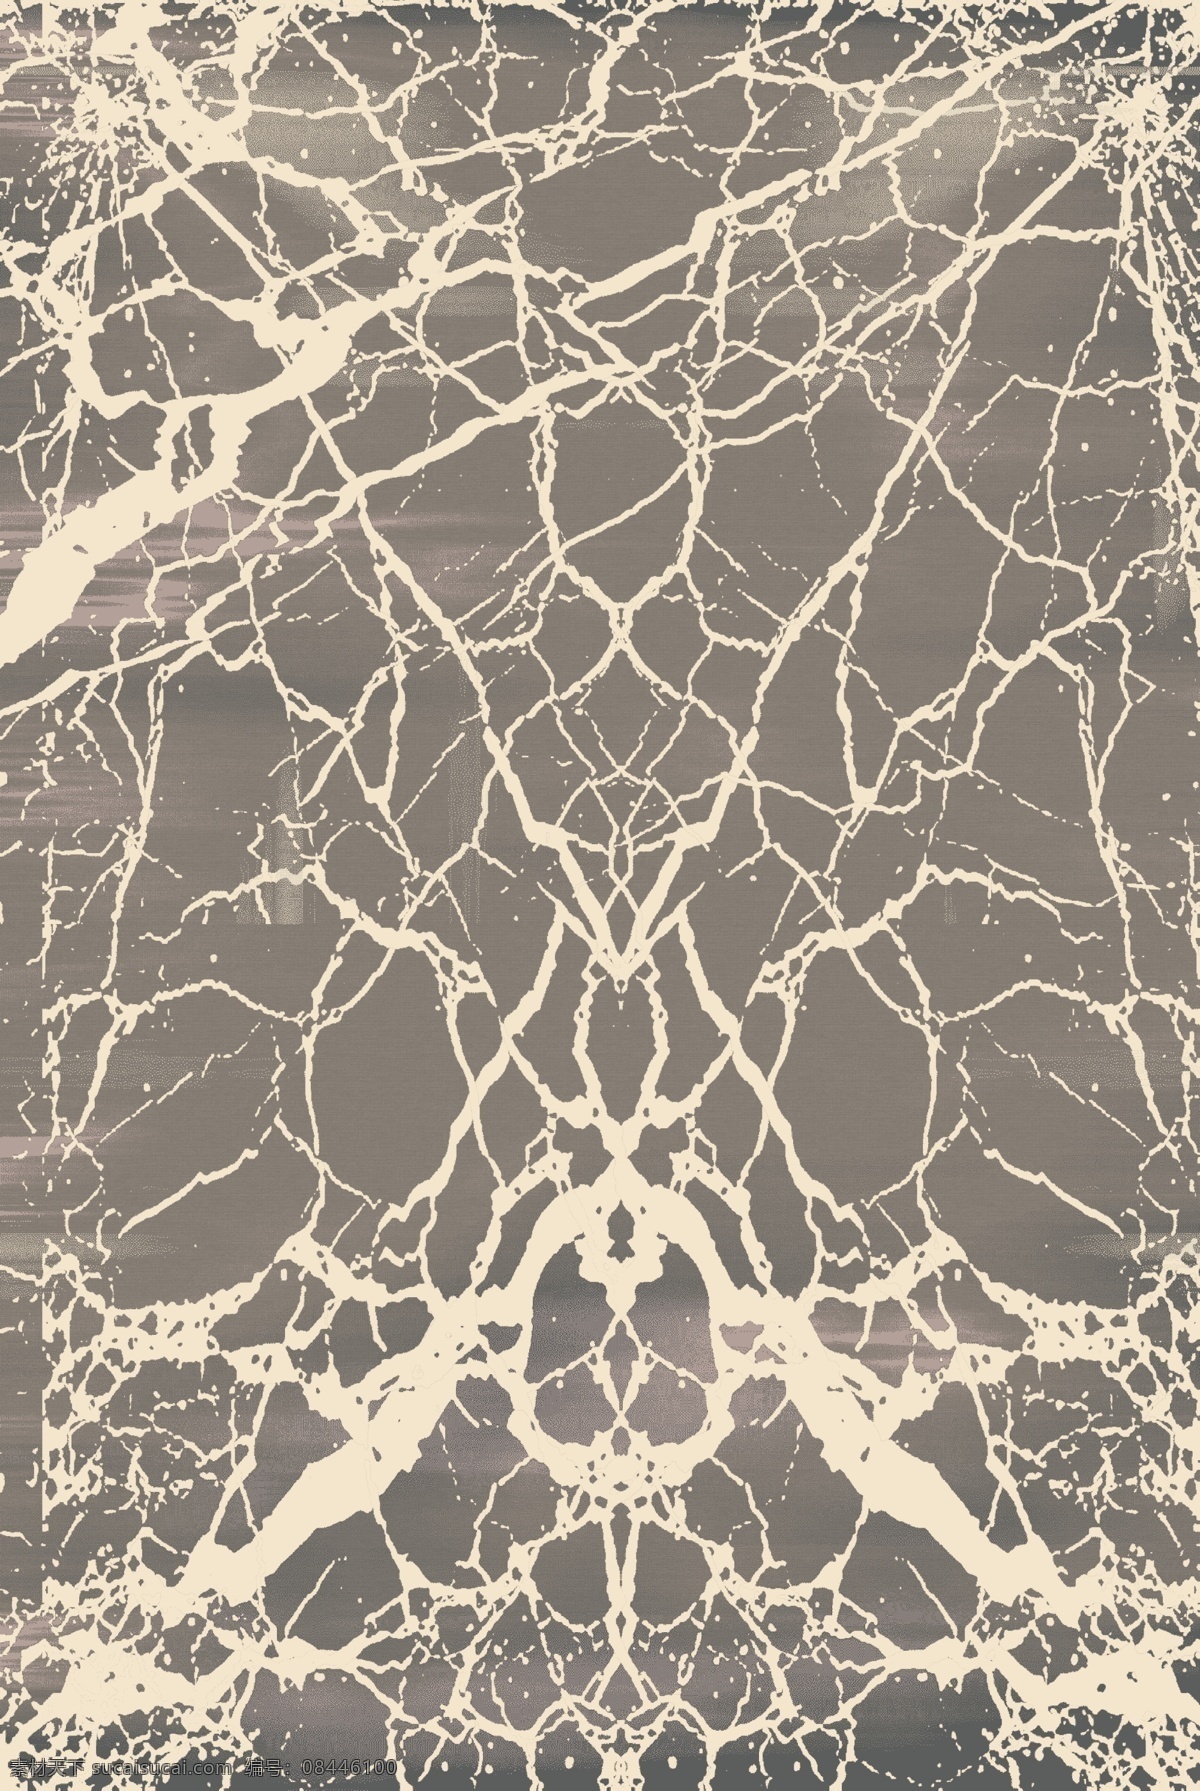 现代 北欧 几何 抽象 纹理 图案 地毯 地垫 大气 客厅 卧室地毯 沙发地毯 家装地毯 地毯设计 时尚 床边毯 卧室 家居图案 地毯图案 高清印花地毯 现代地毯 欧式地毯 简约几何 北欧简约 长方形地毯 方块地毯 抽象几何 北欧抽象 几何抽象 抽象设计 抽象现代 现代几何 现代设计